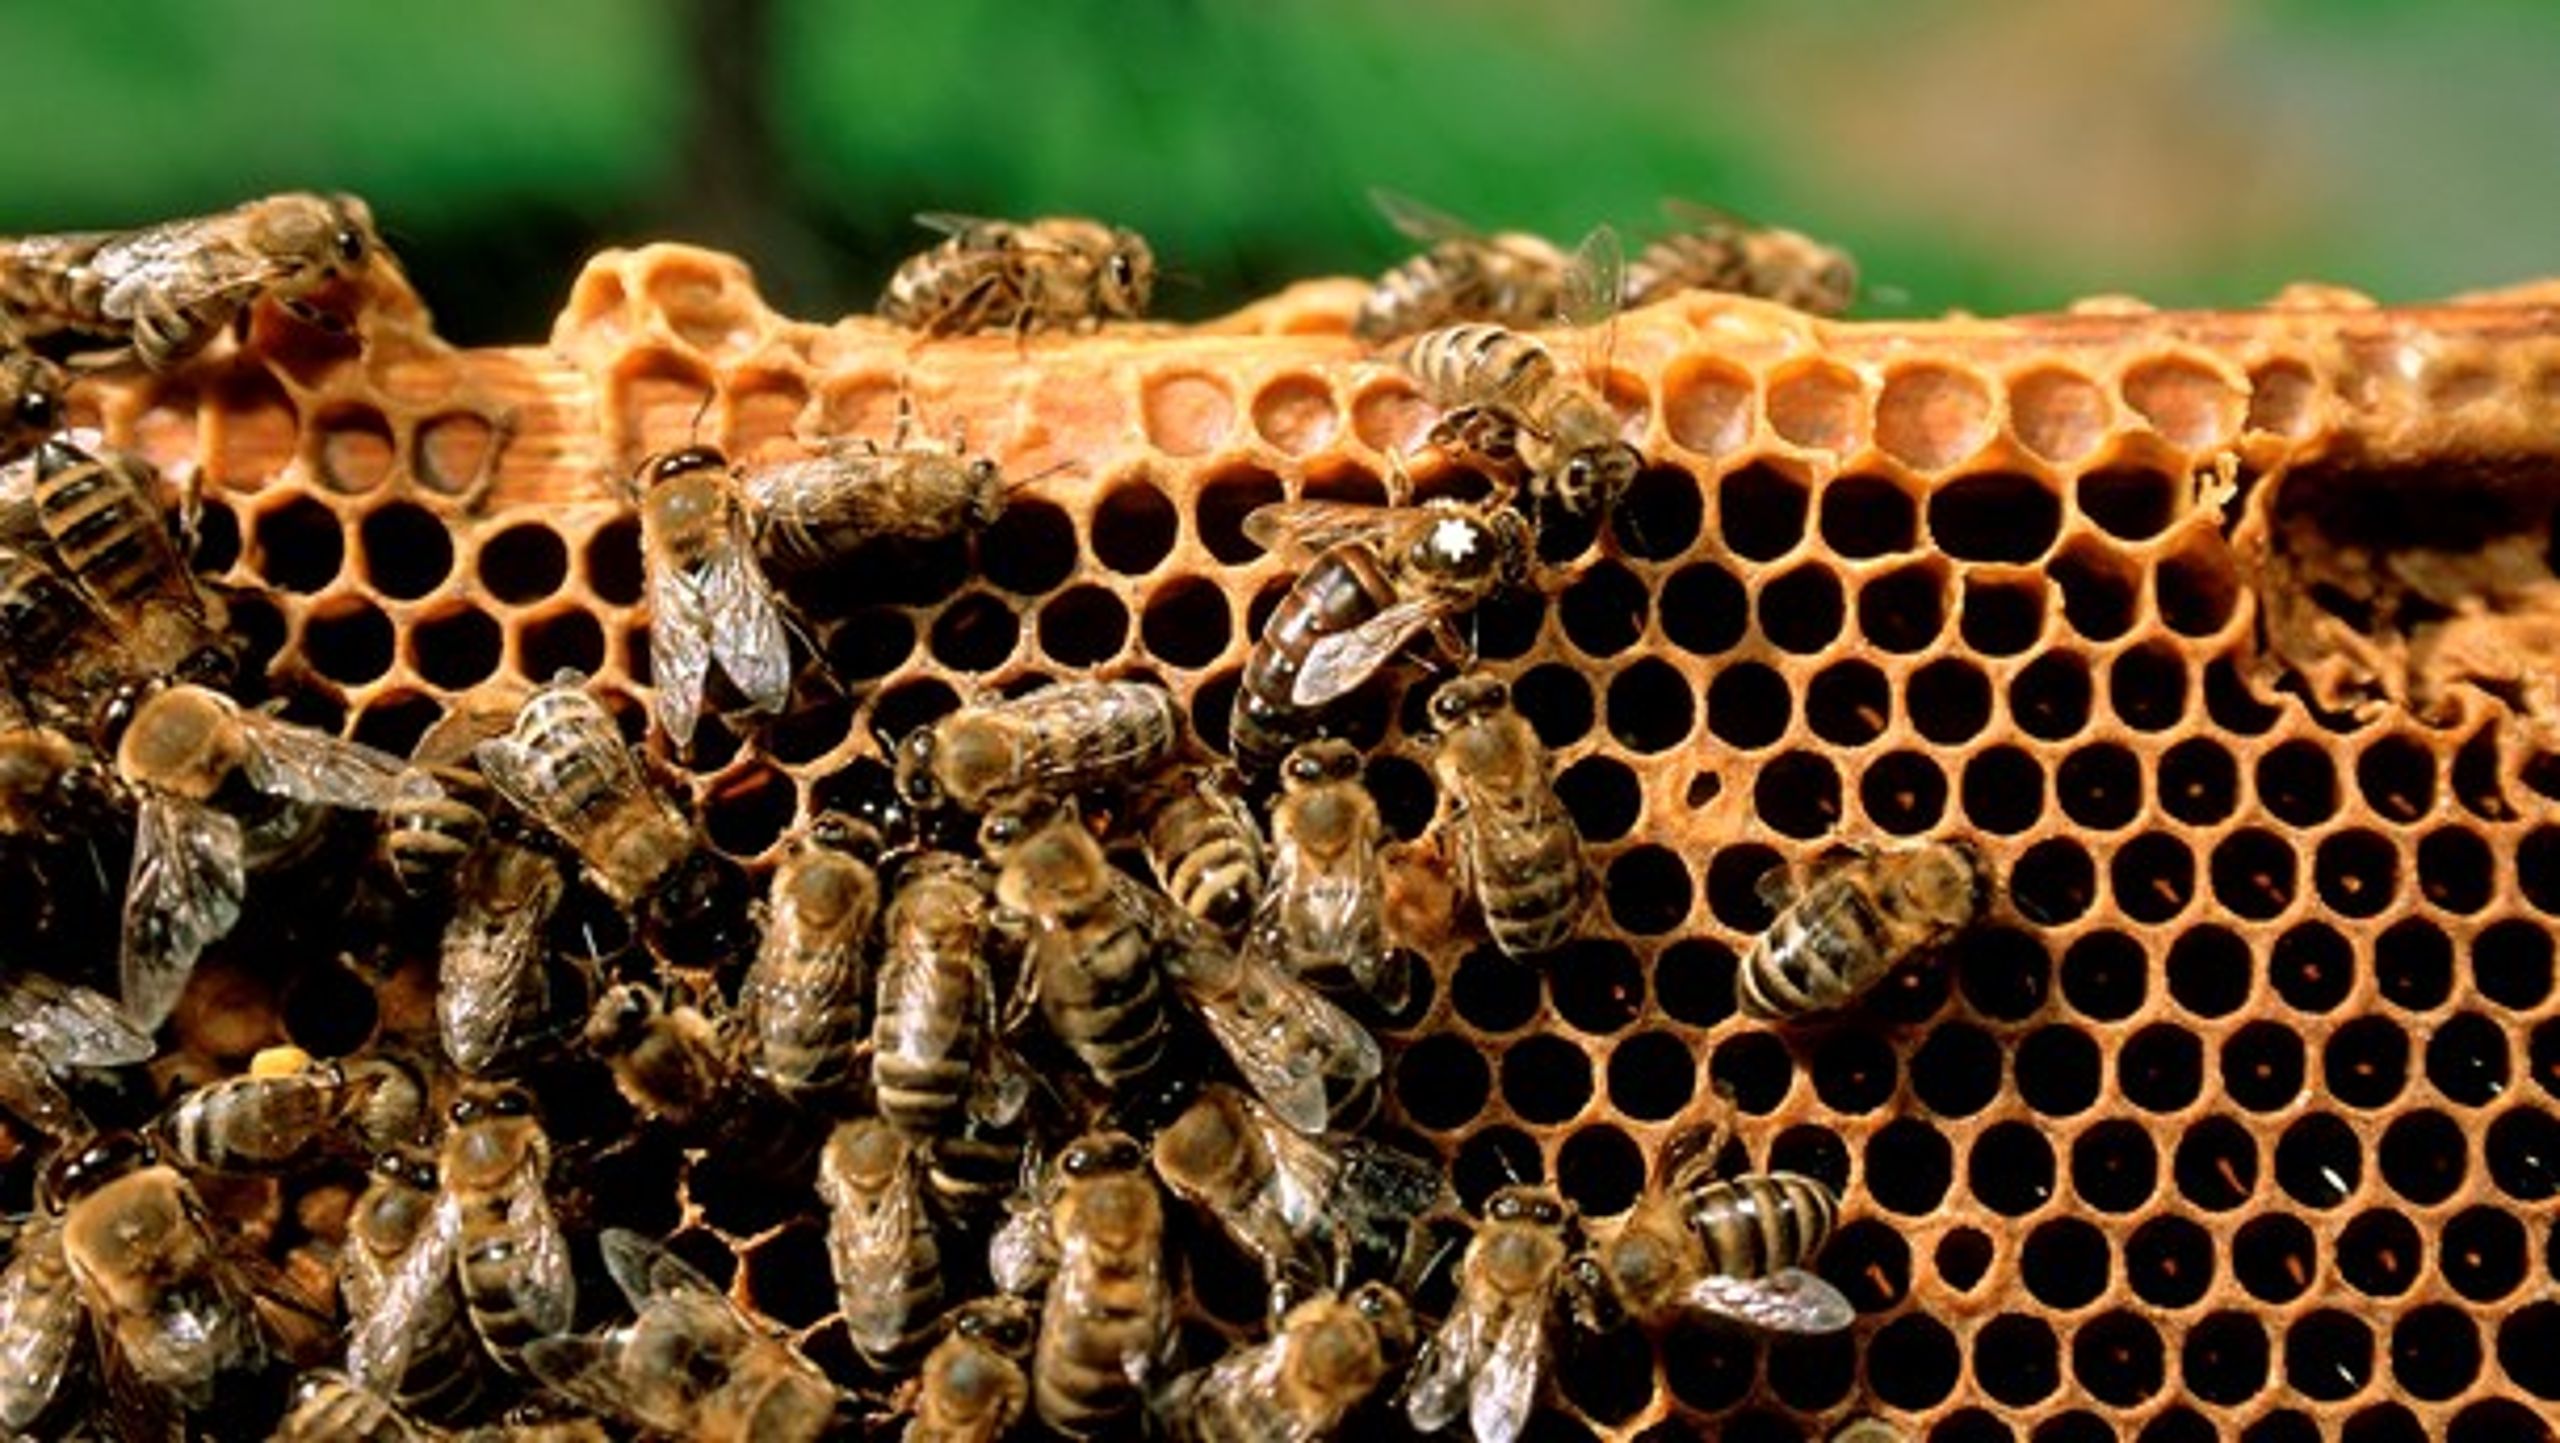 En gruppe pesticider kaldet neonikotinoider er under stærk mistanke for at være skyld i biers død. Derfor vil EU-eksperter i denne uge diskuterer, om de skal forbydes.